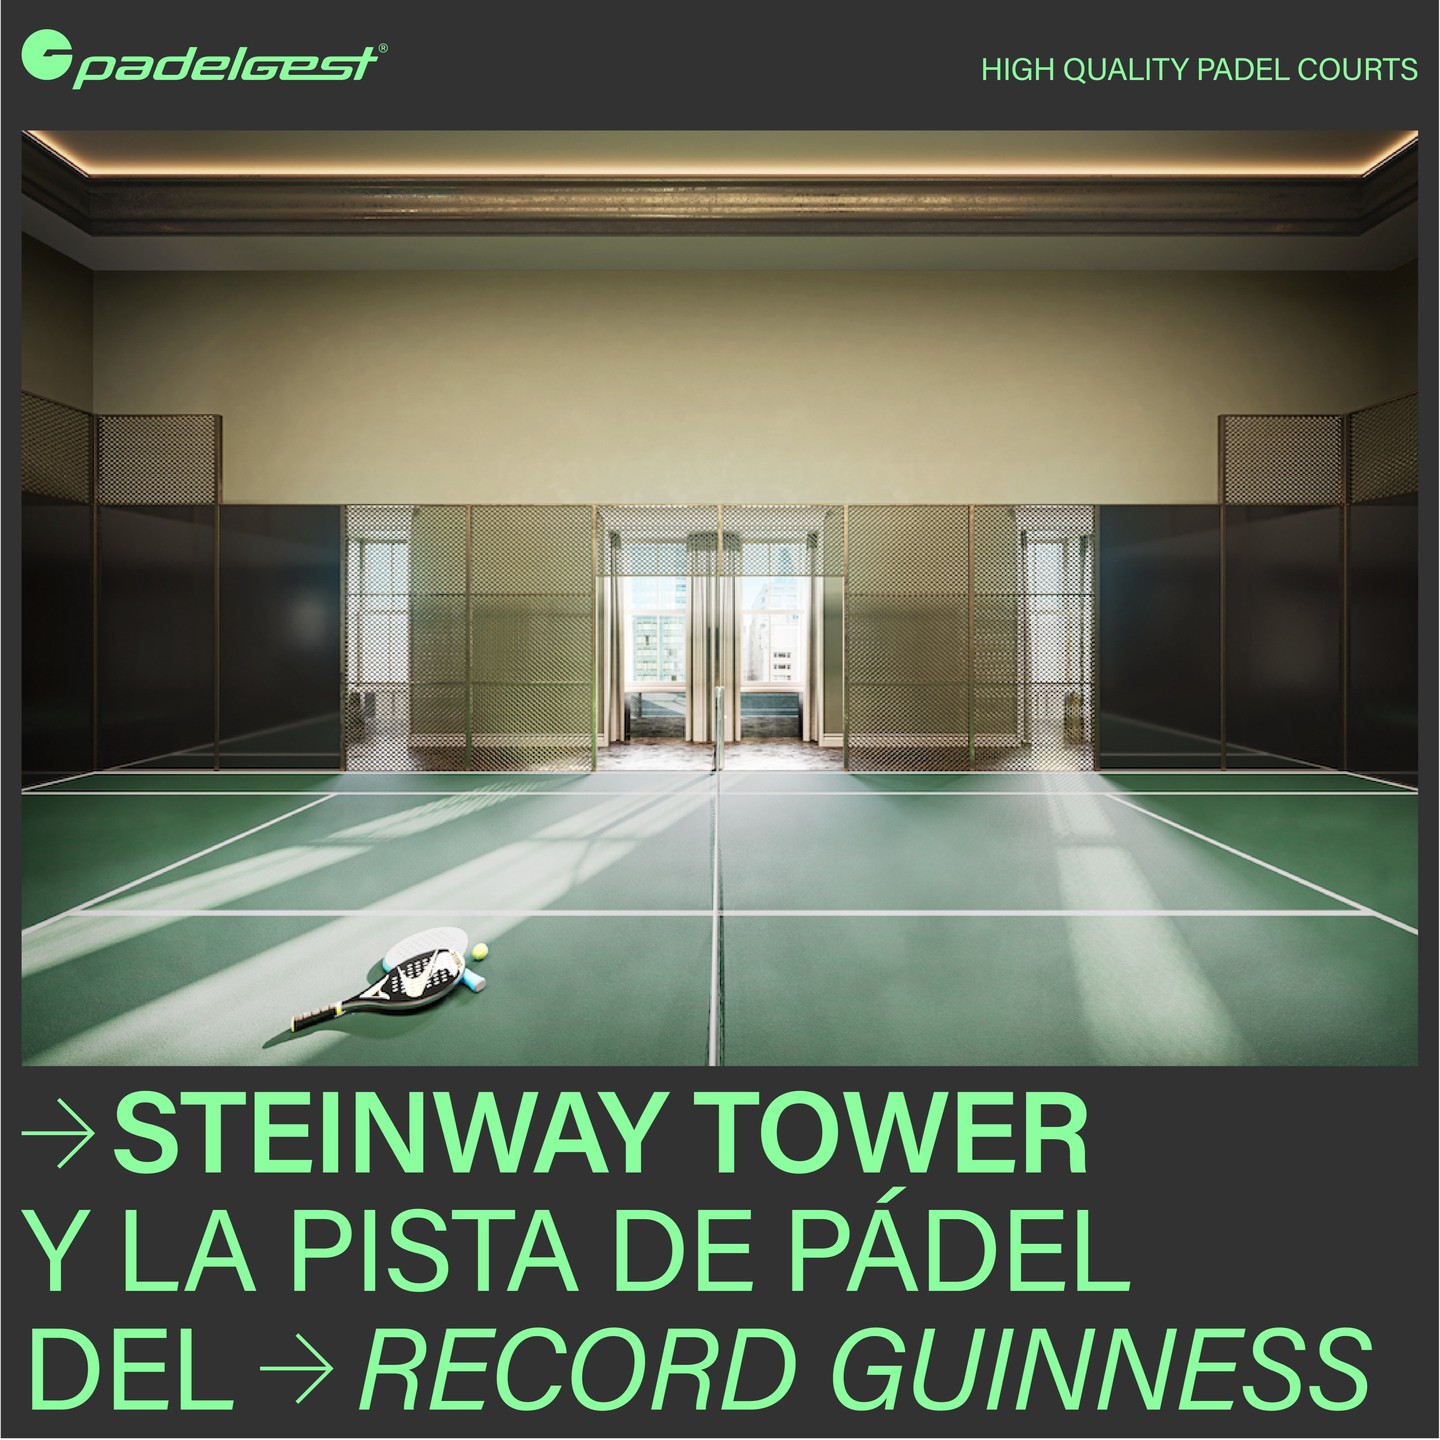 Padelgest, la empresa fabricante de pistas, ha llevado al pádel a lo más alto y ha conseguido entrar en el Guiness de los records tras instalar una pista de pádel en la Steinway Tower de Nueva York